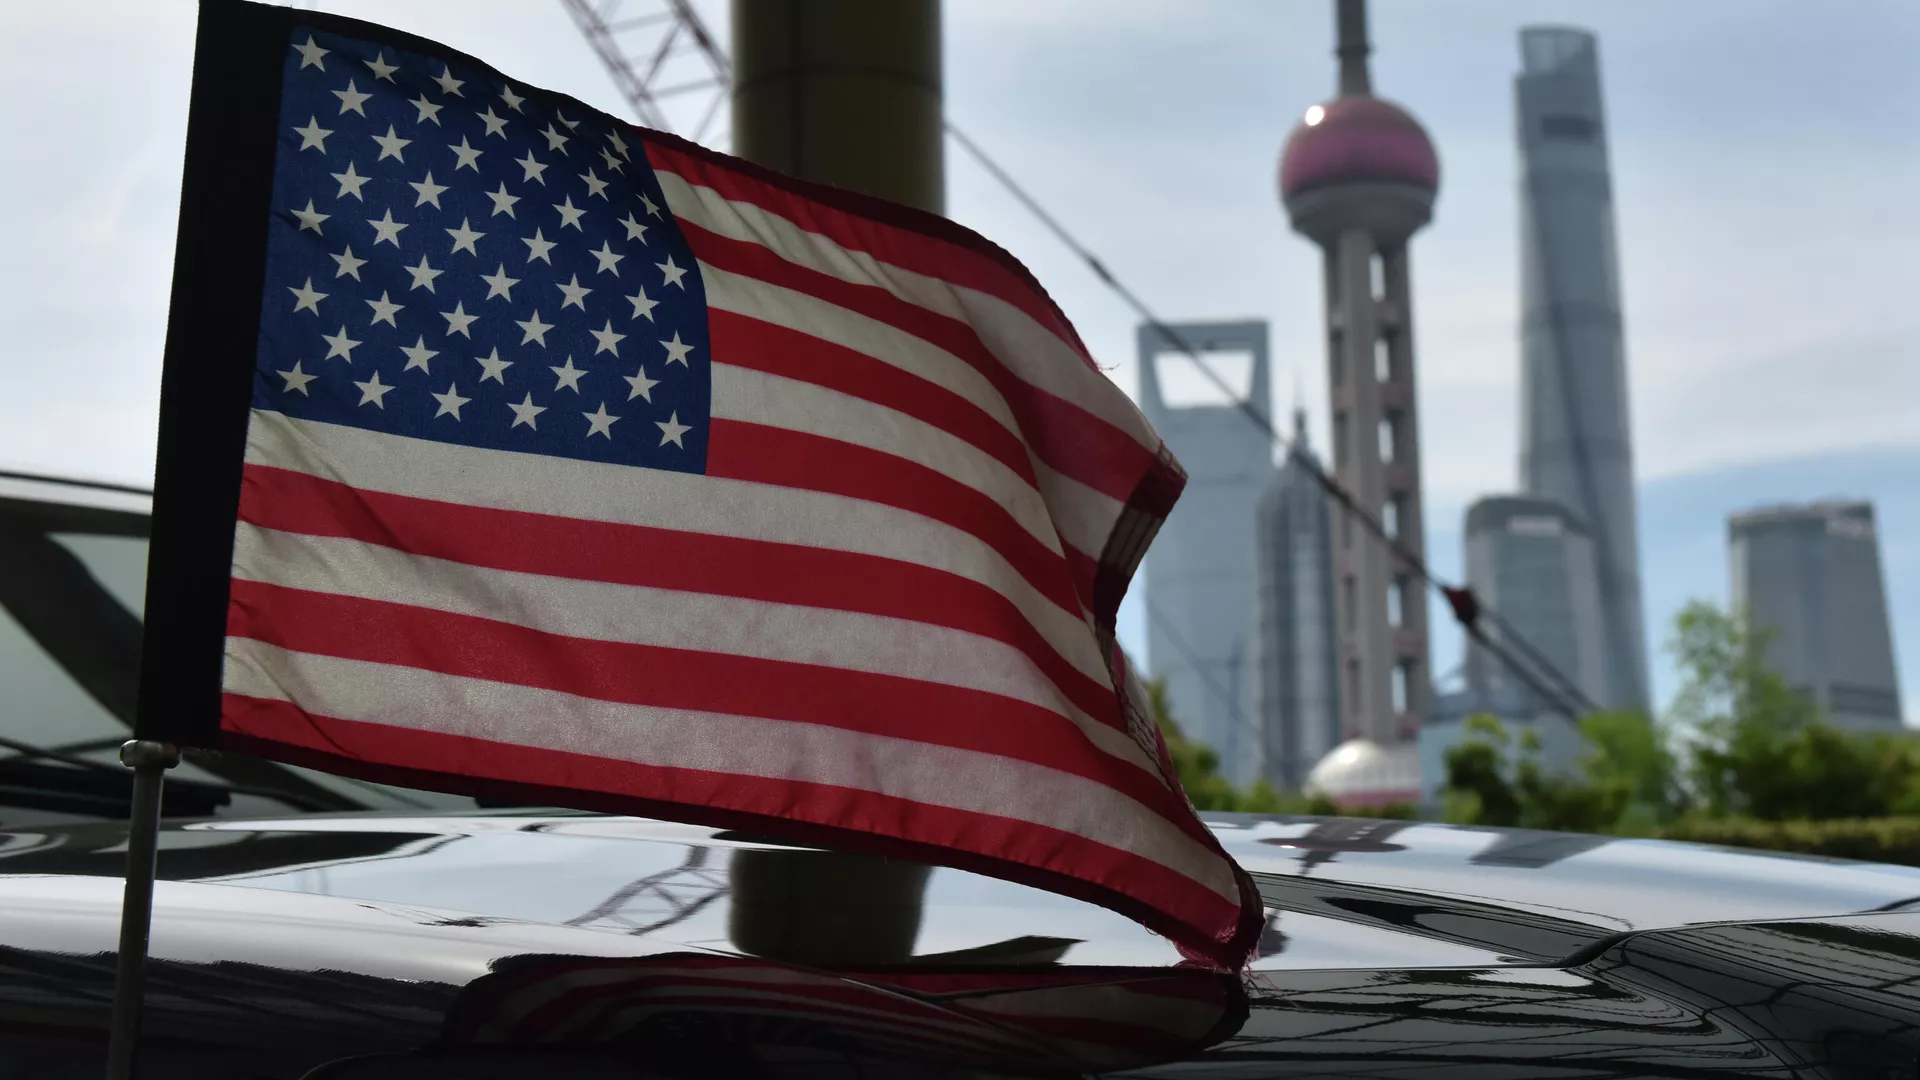 Σημαία στο αυτοκίνητο του προξενείου των ΗΠΑ στη Σαγκάη - ειδήσεις της Ρωσίας σήμερα